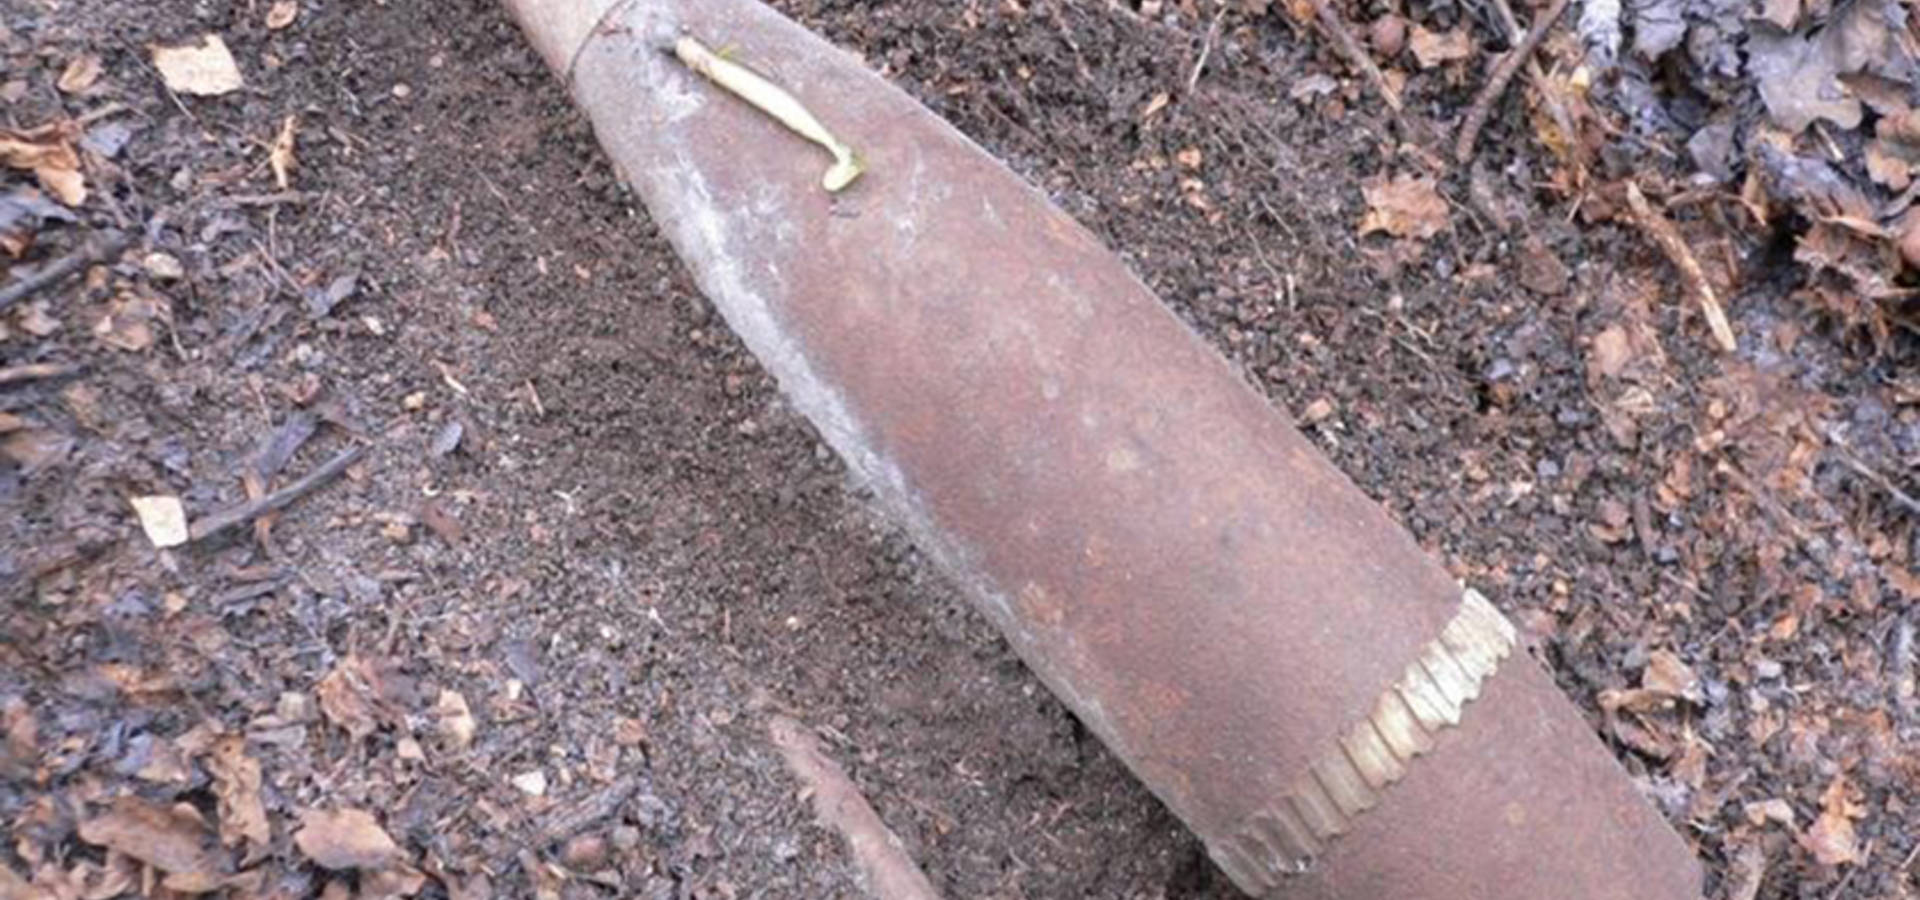 Артилерійський снаряд  знайшли за  Осичною Хмільницького району на Вінниччині 